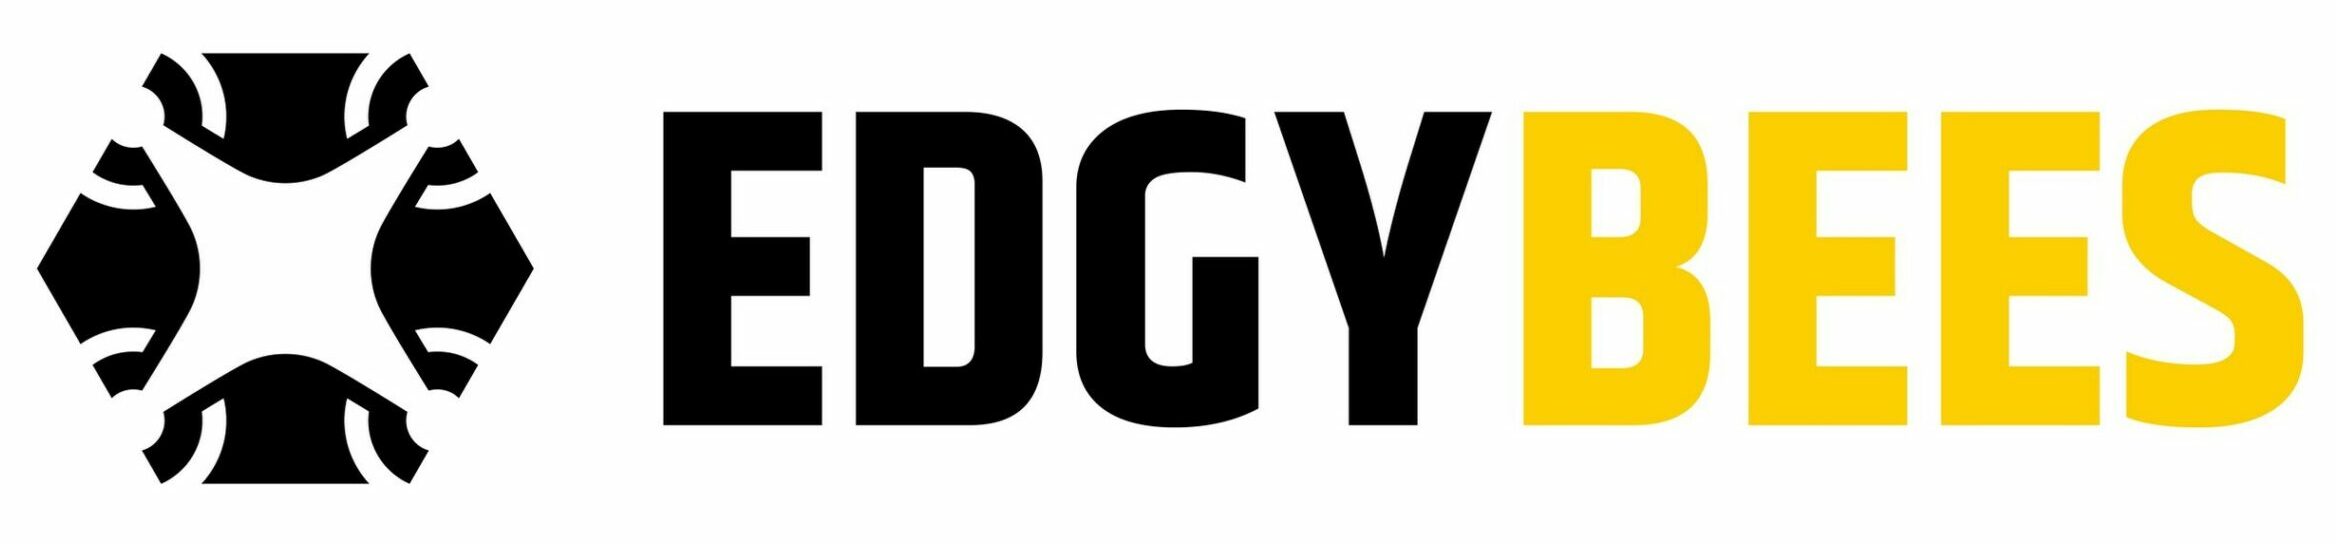 edgybees logo scaled